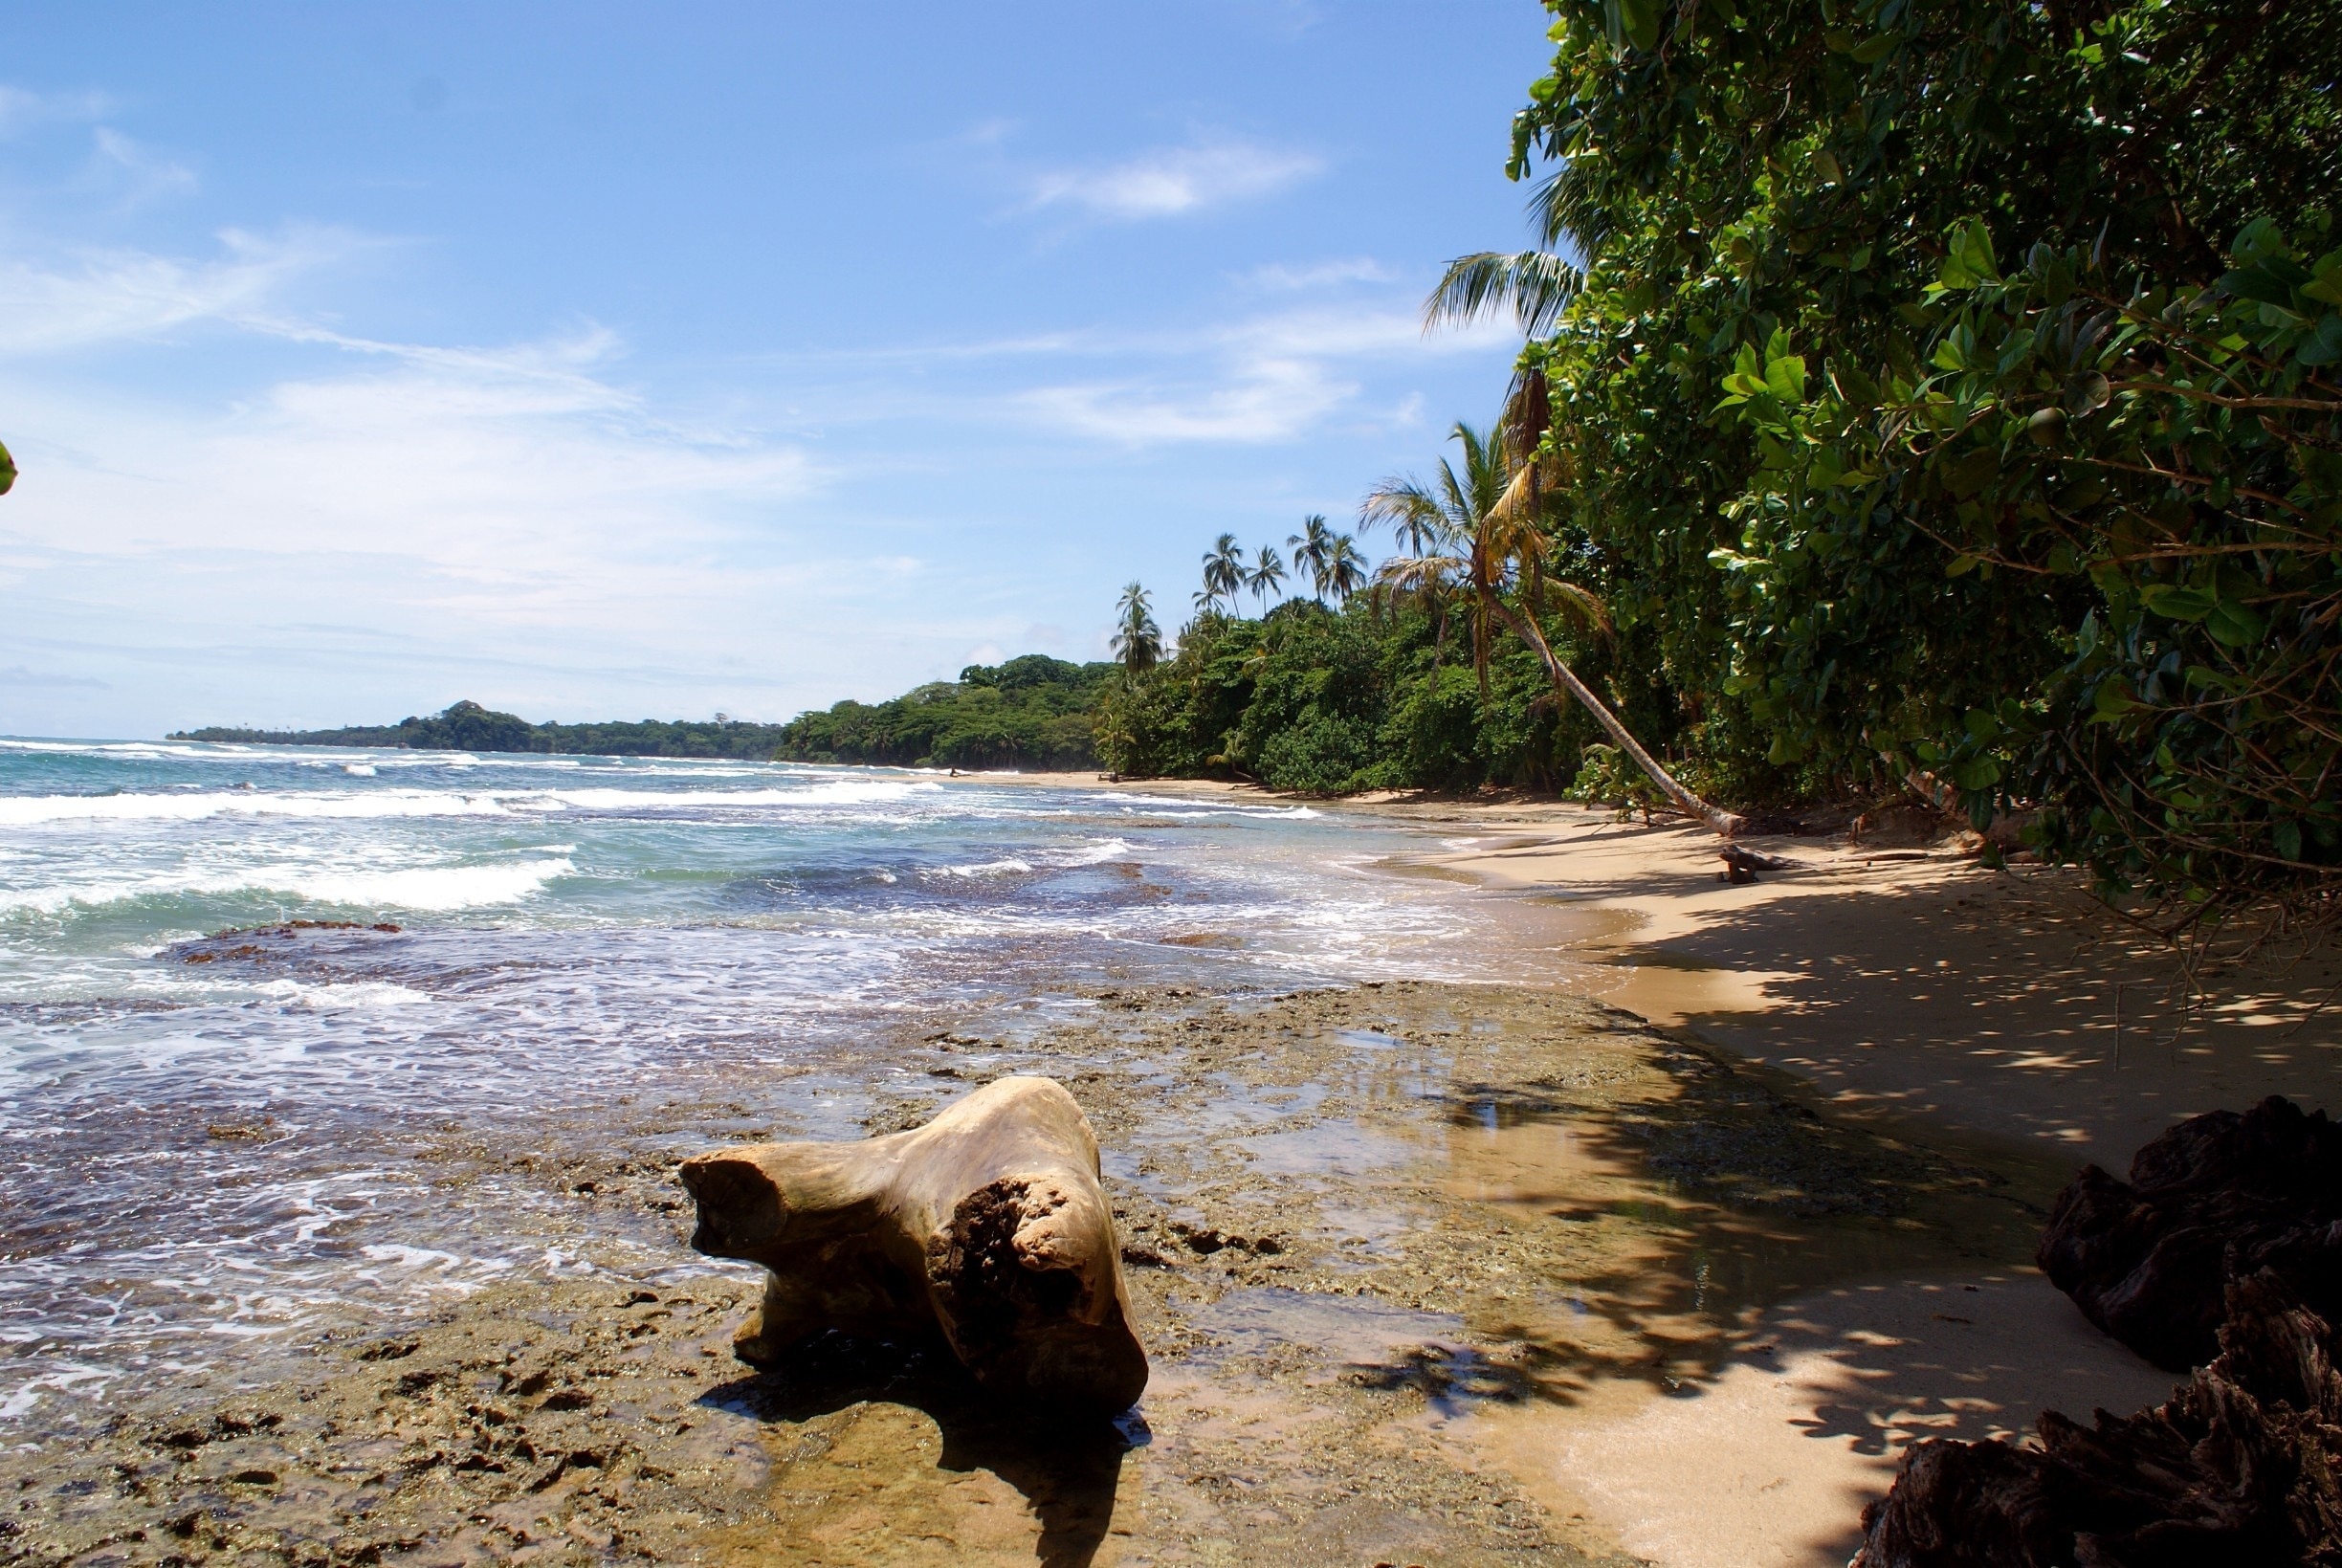 Beautiful, if a bit rough, beach in southern Costa Rica. #beach 